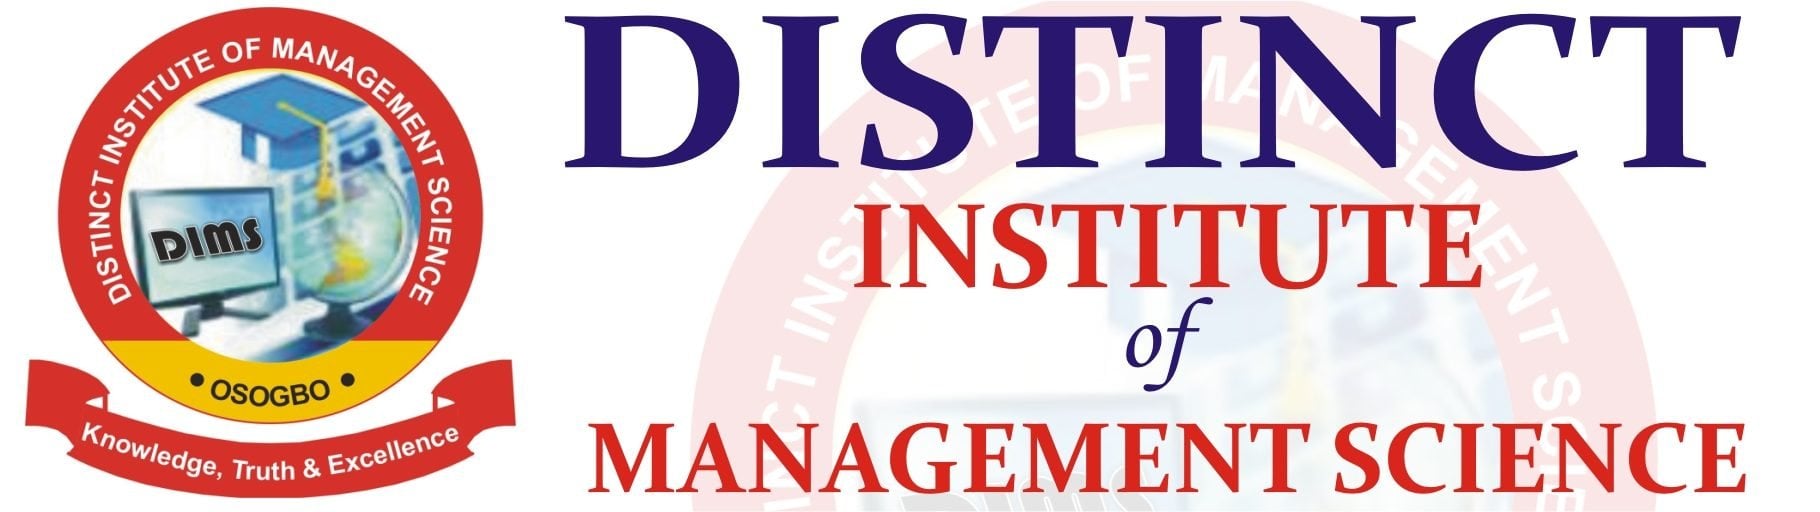 Distinct Institute of Management Science Admission